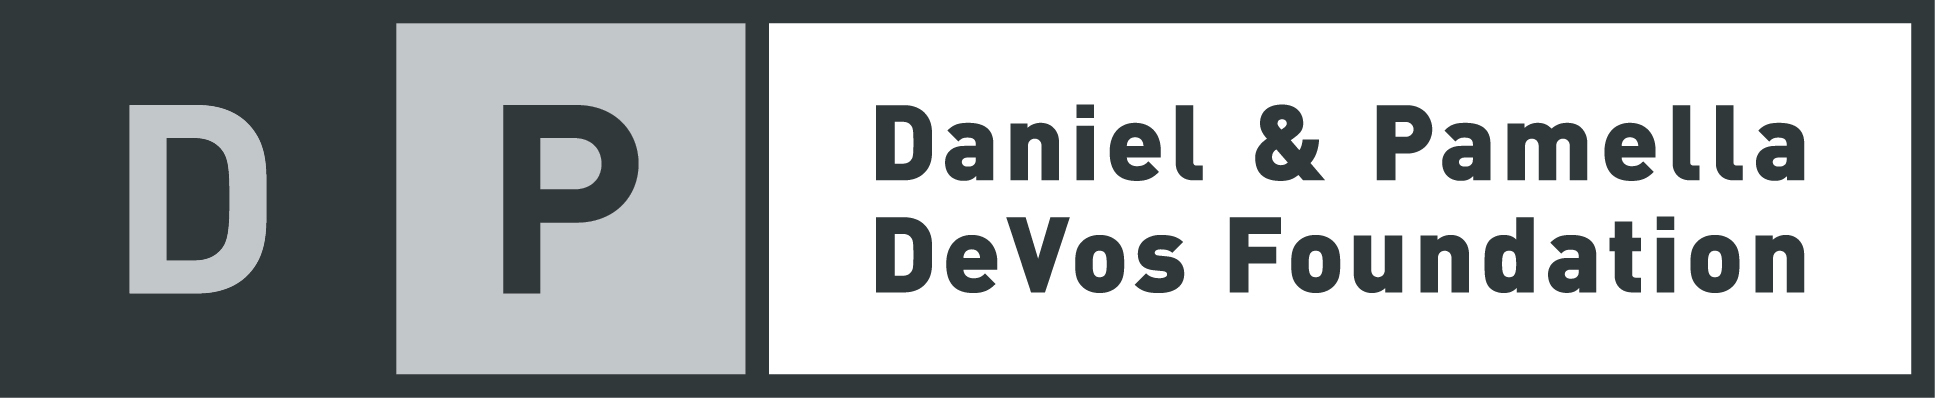 DeVos Foundation logo